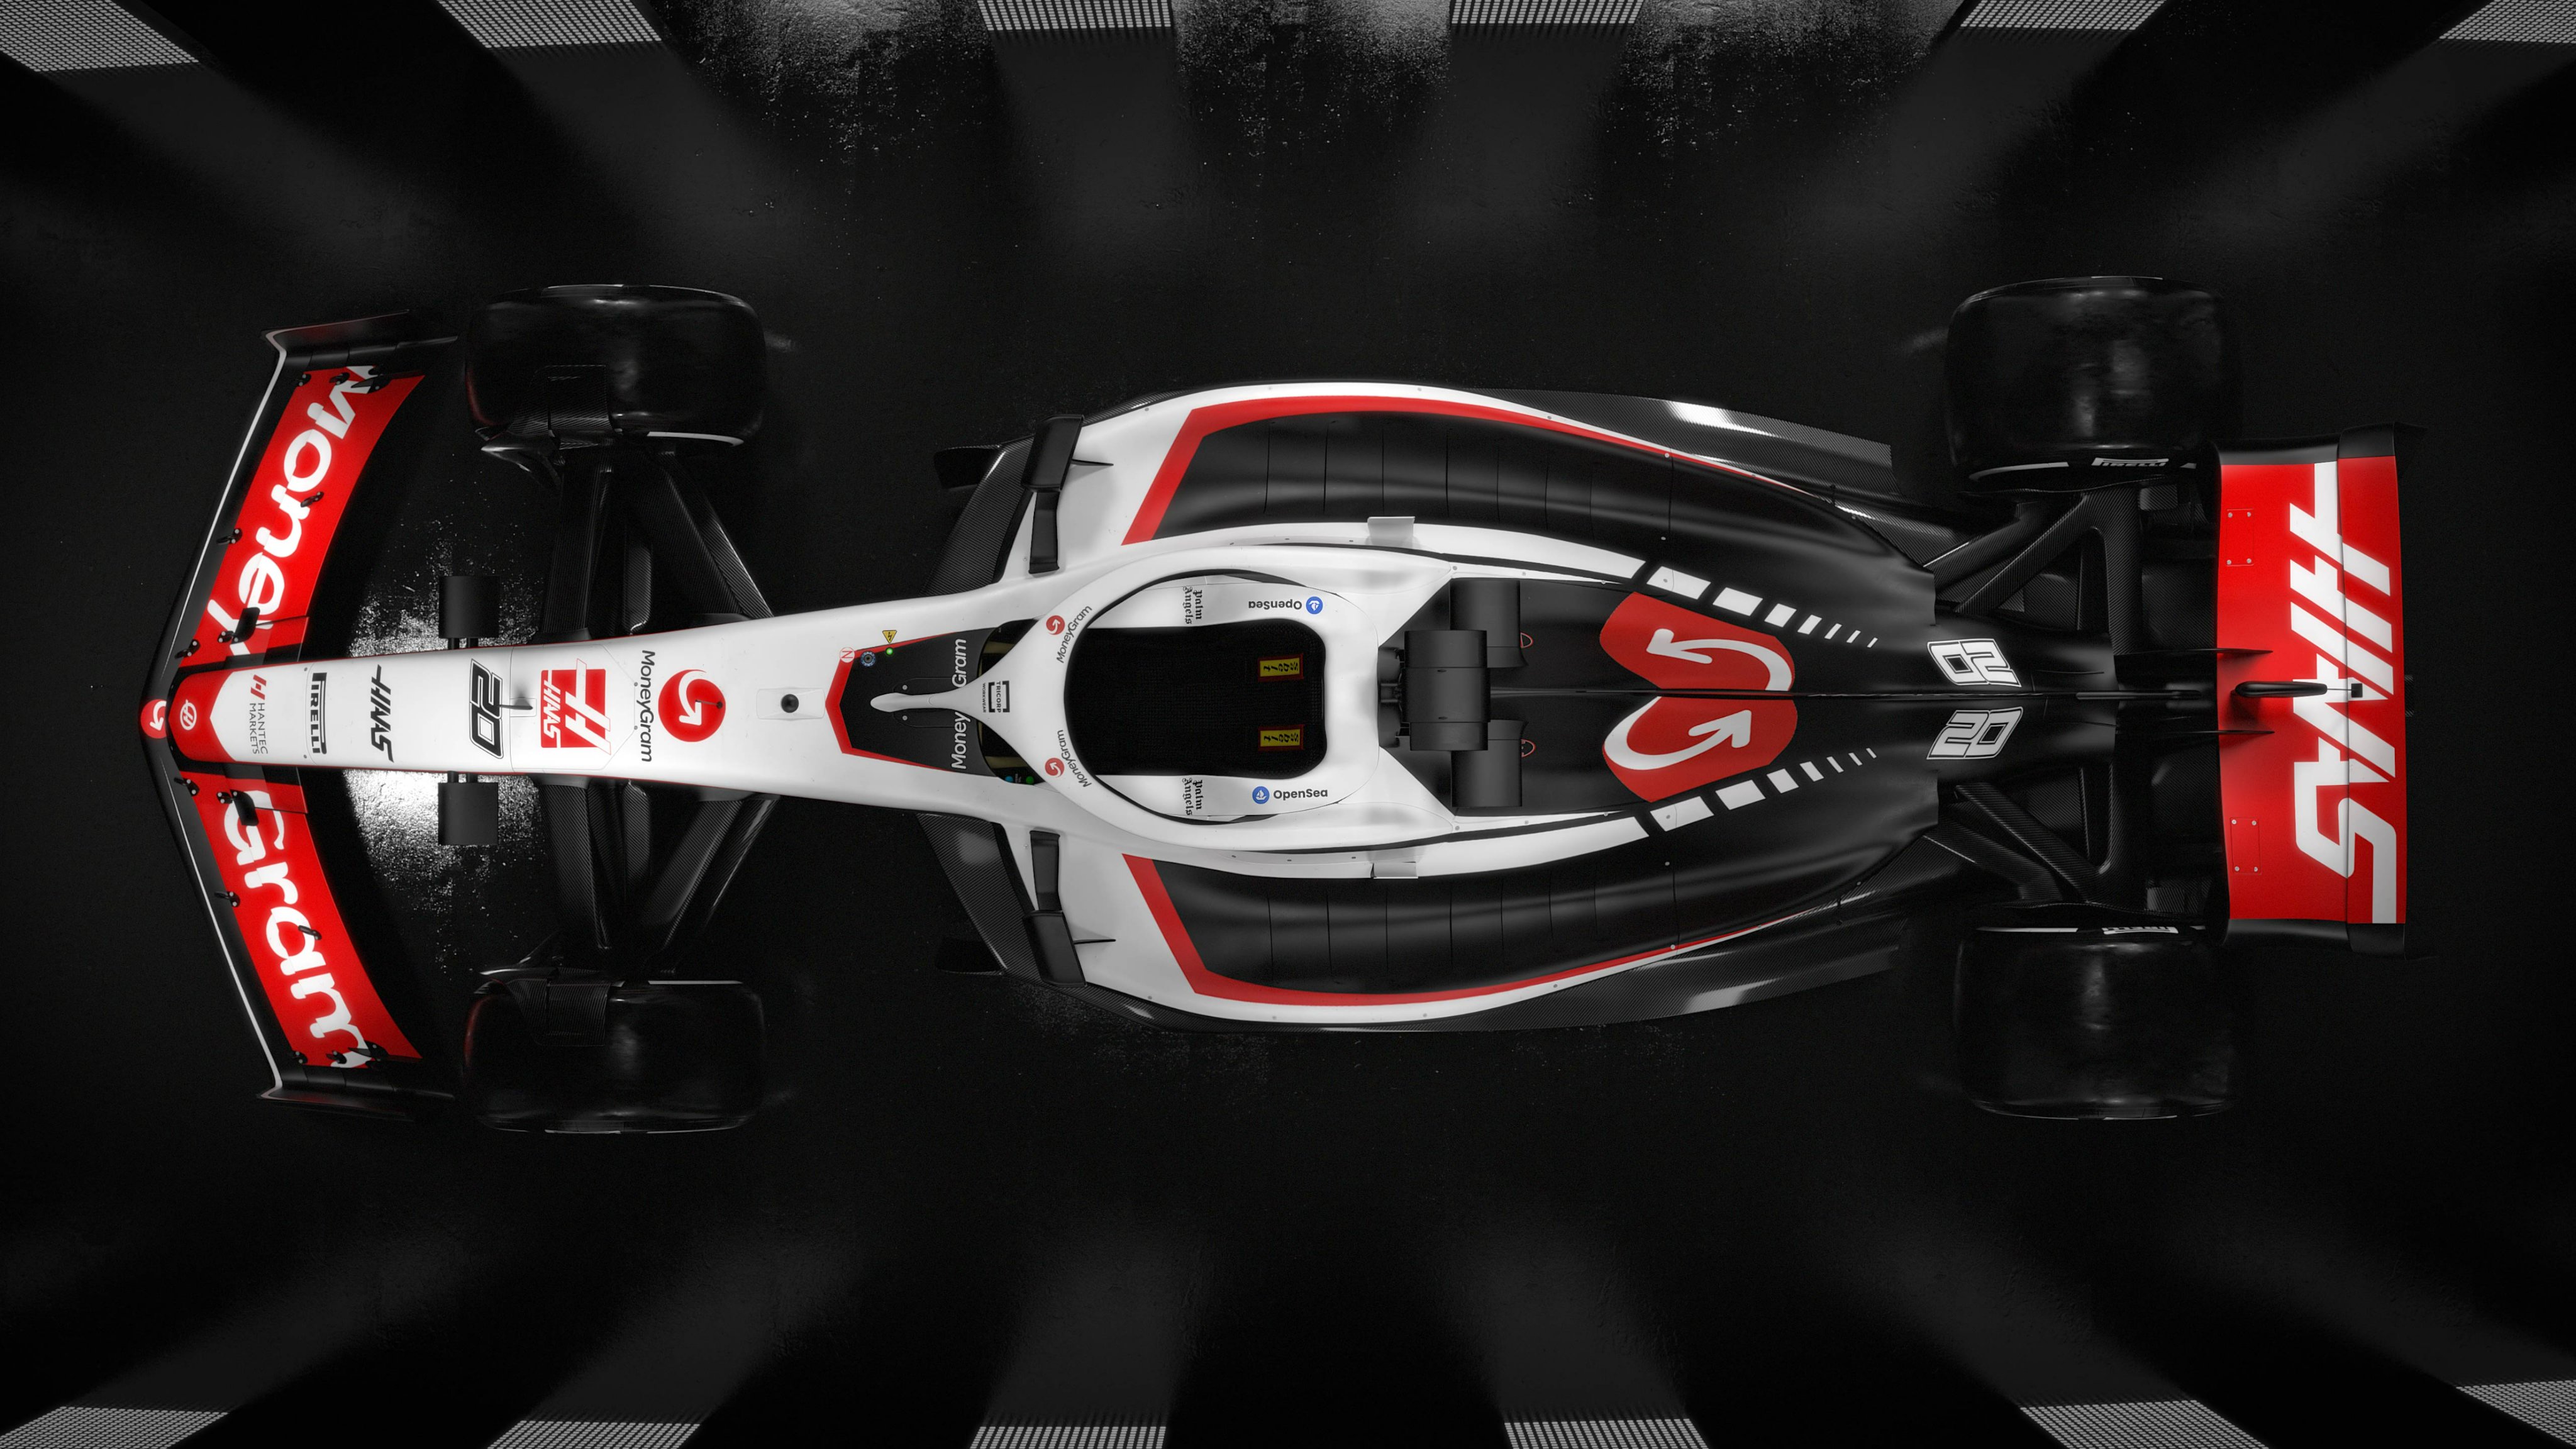 Fórmula 1: La escudería Haas presenta la decoración para su coche de F1 2023